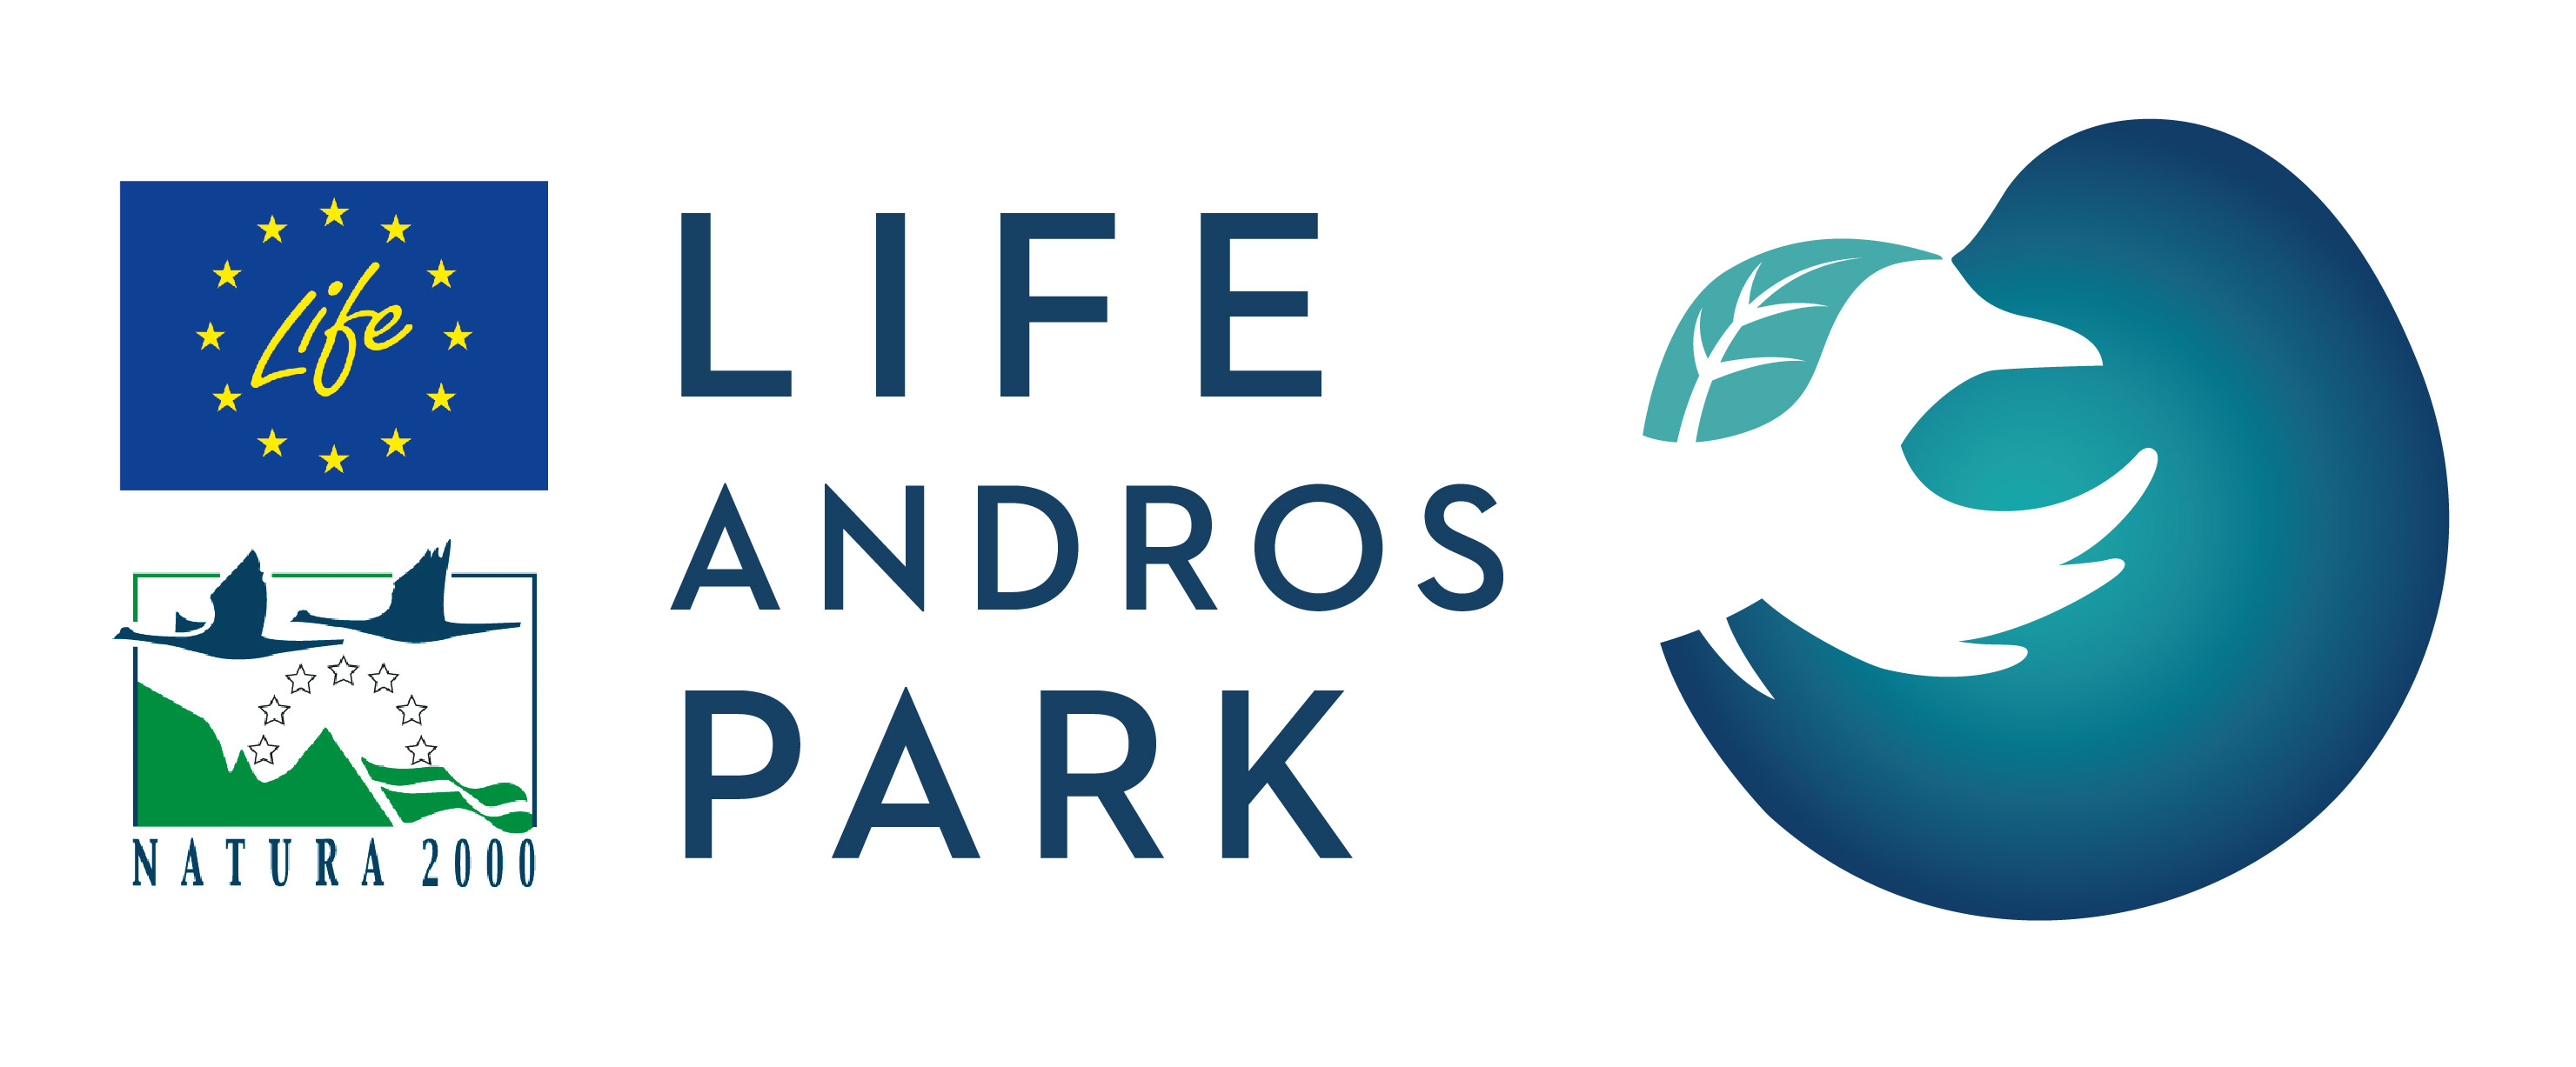 logo life andros park 08 2